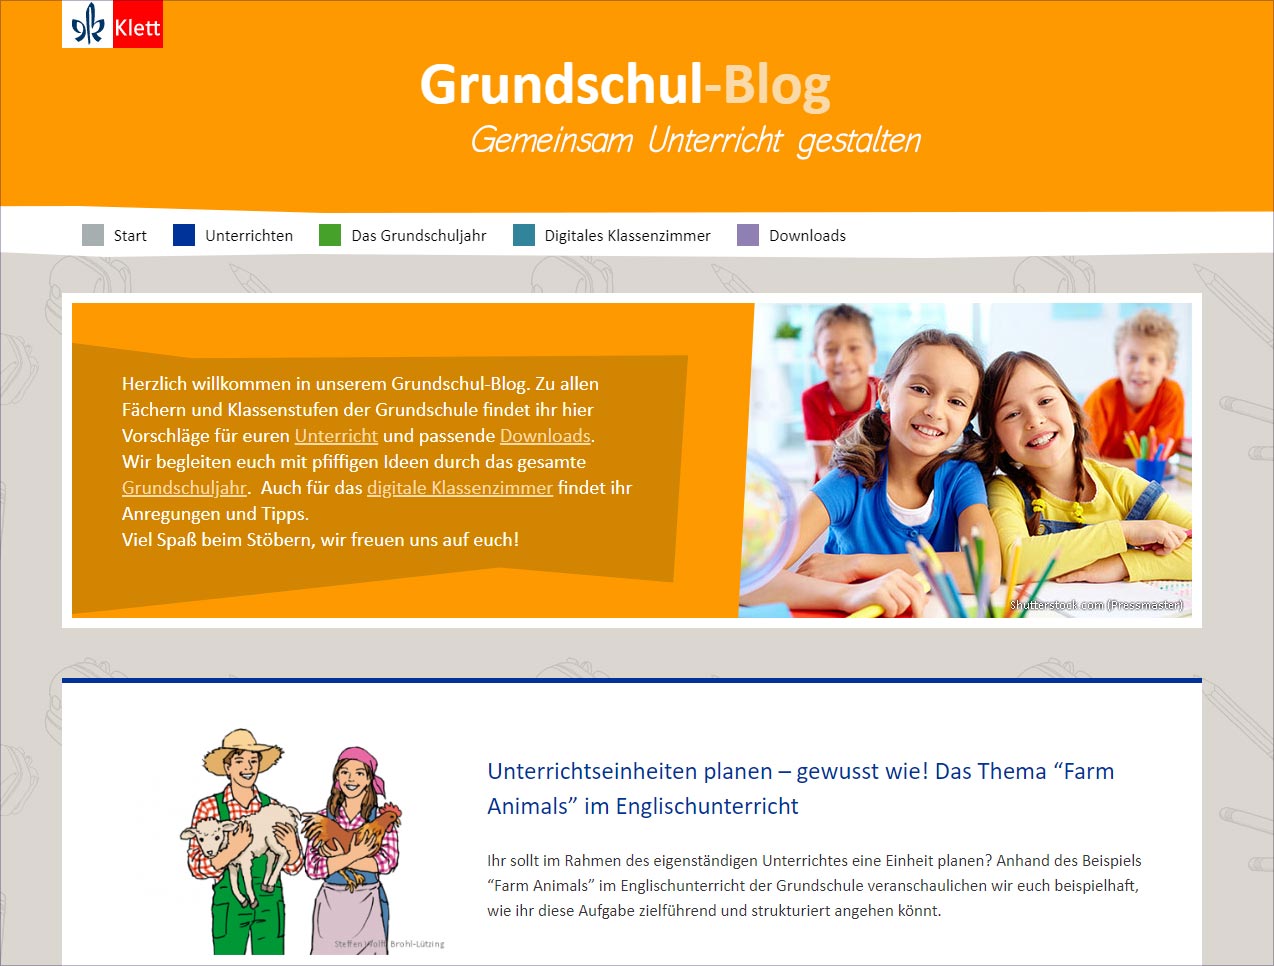 Case Study: Grundschul-Blog 